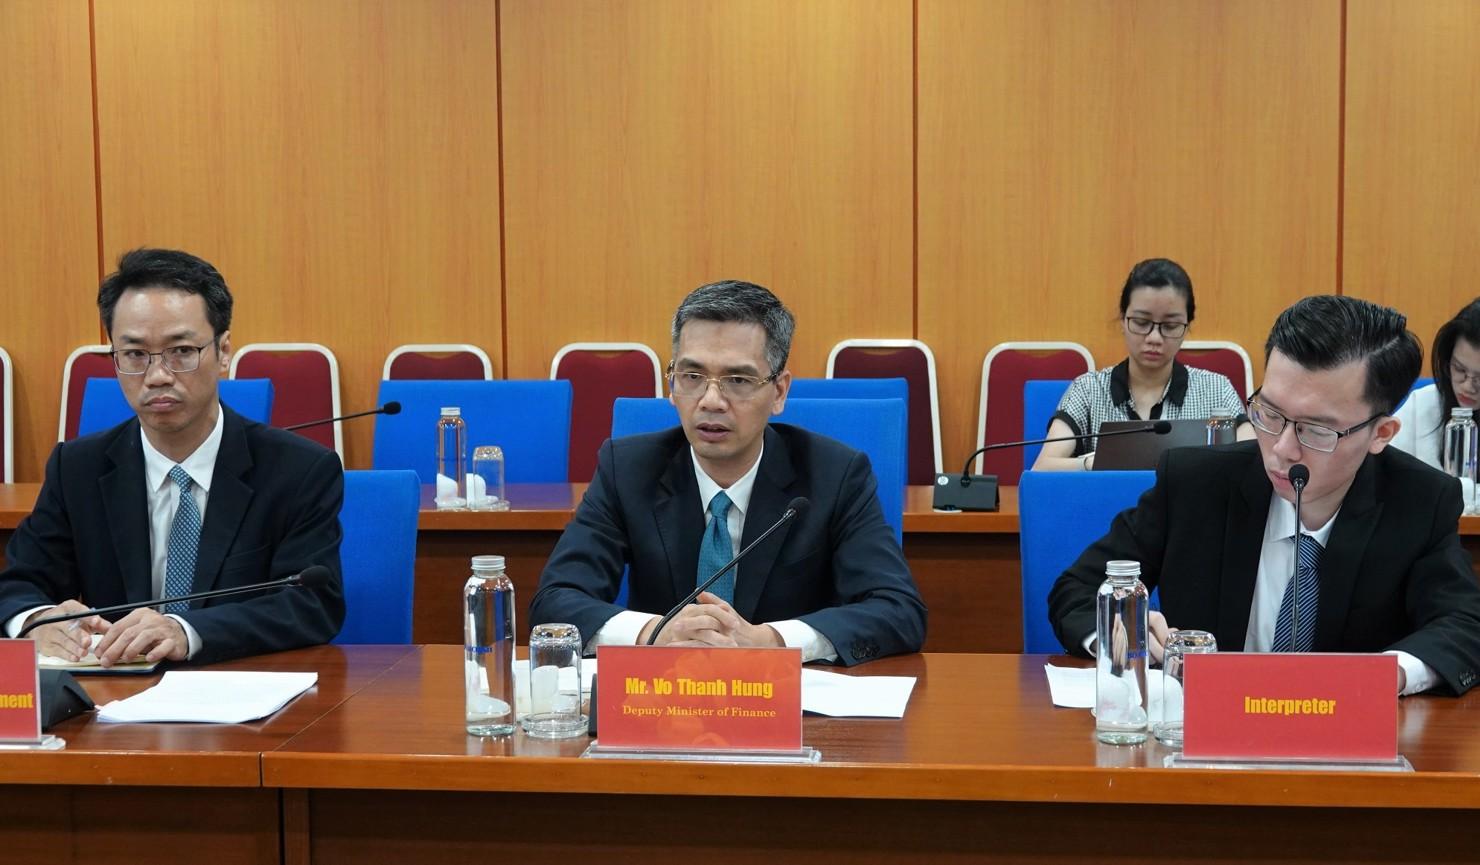 Thứ trưởng Bộ Tài chính Võ Thành Hưng thông tin chung về tình hình kinh tế vĩ mô Việt Nam.